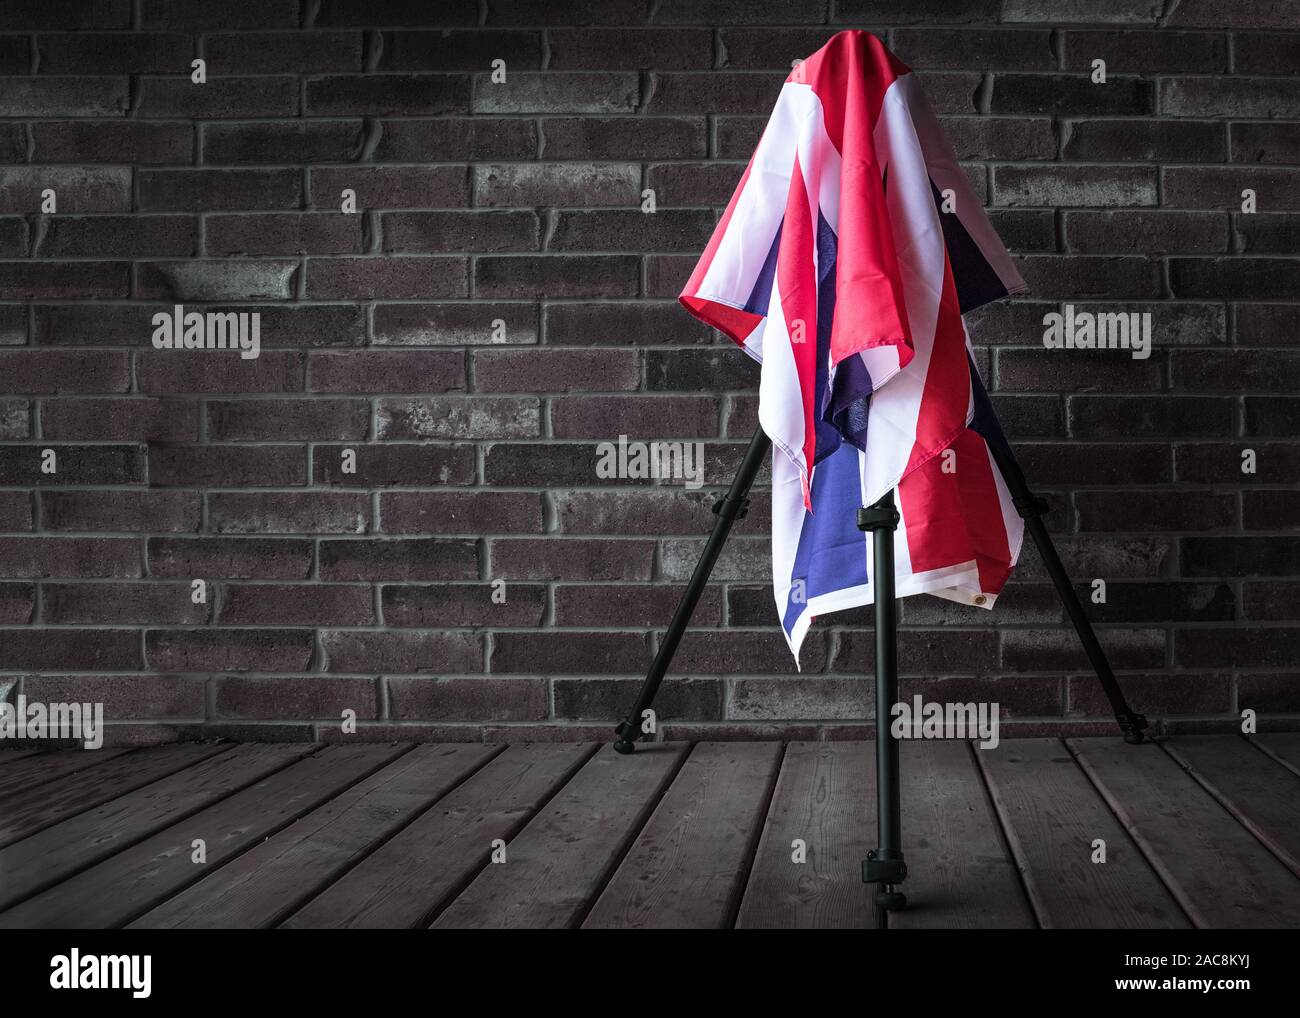 Di fronte a un muro di mattoni, una telecamera su un cavalletto, coperto con la bandiera del Regno Unito. Foto Stock